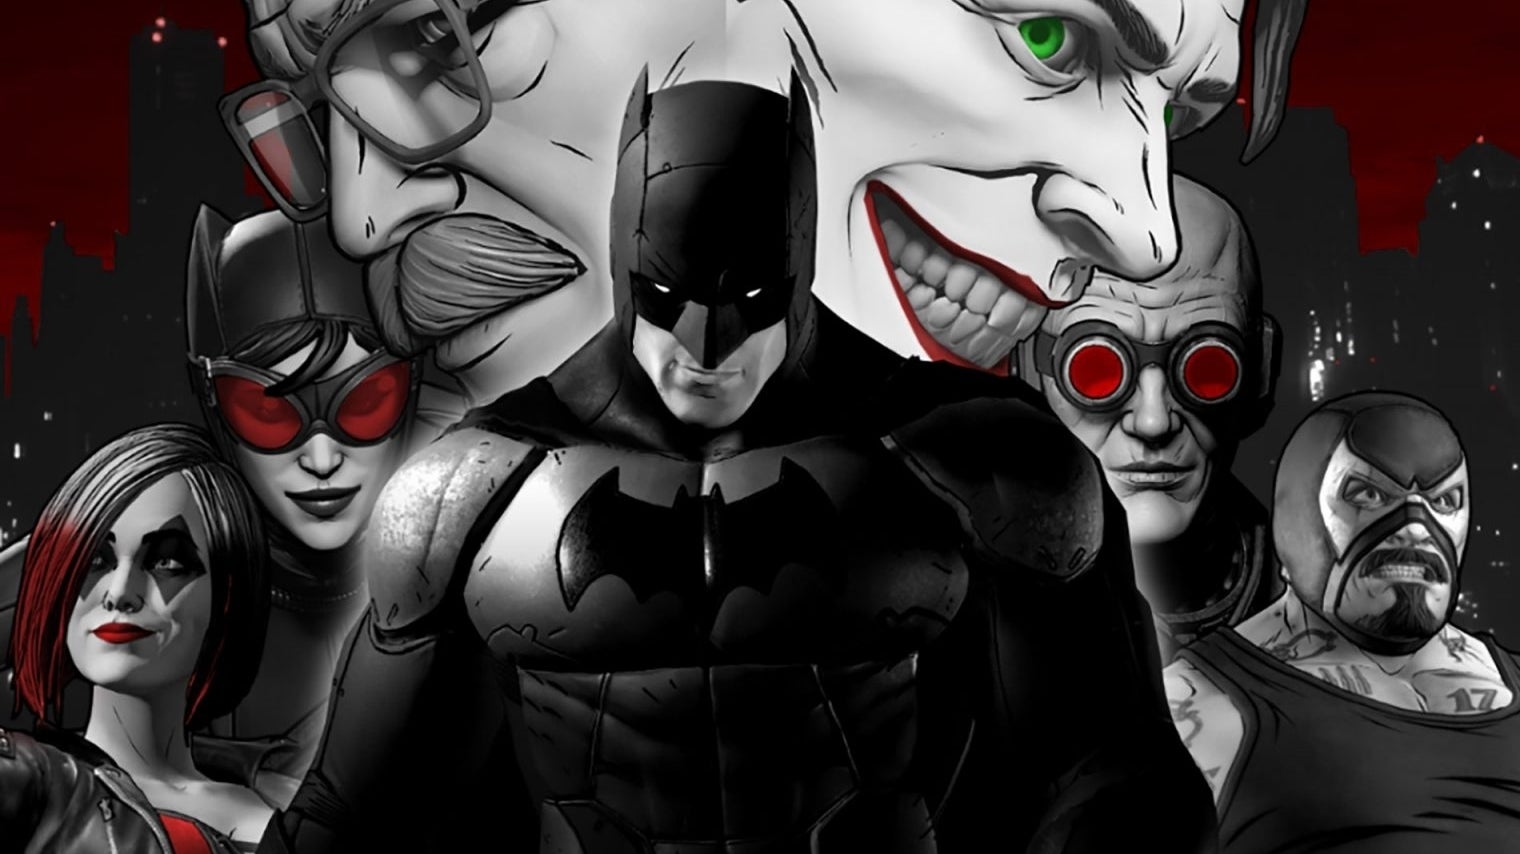 Immagine di Batman Shadows Edition: un DLC per l'originale titolo Telltale emerge dalle tenebre